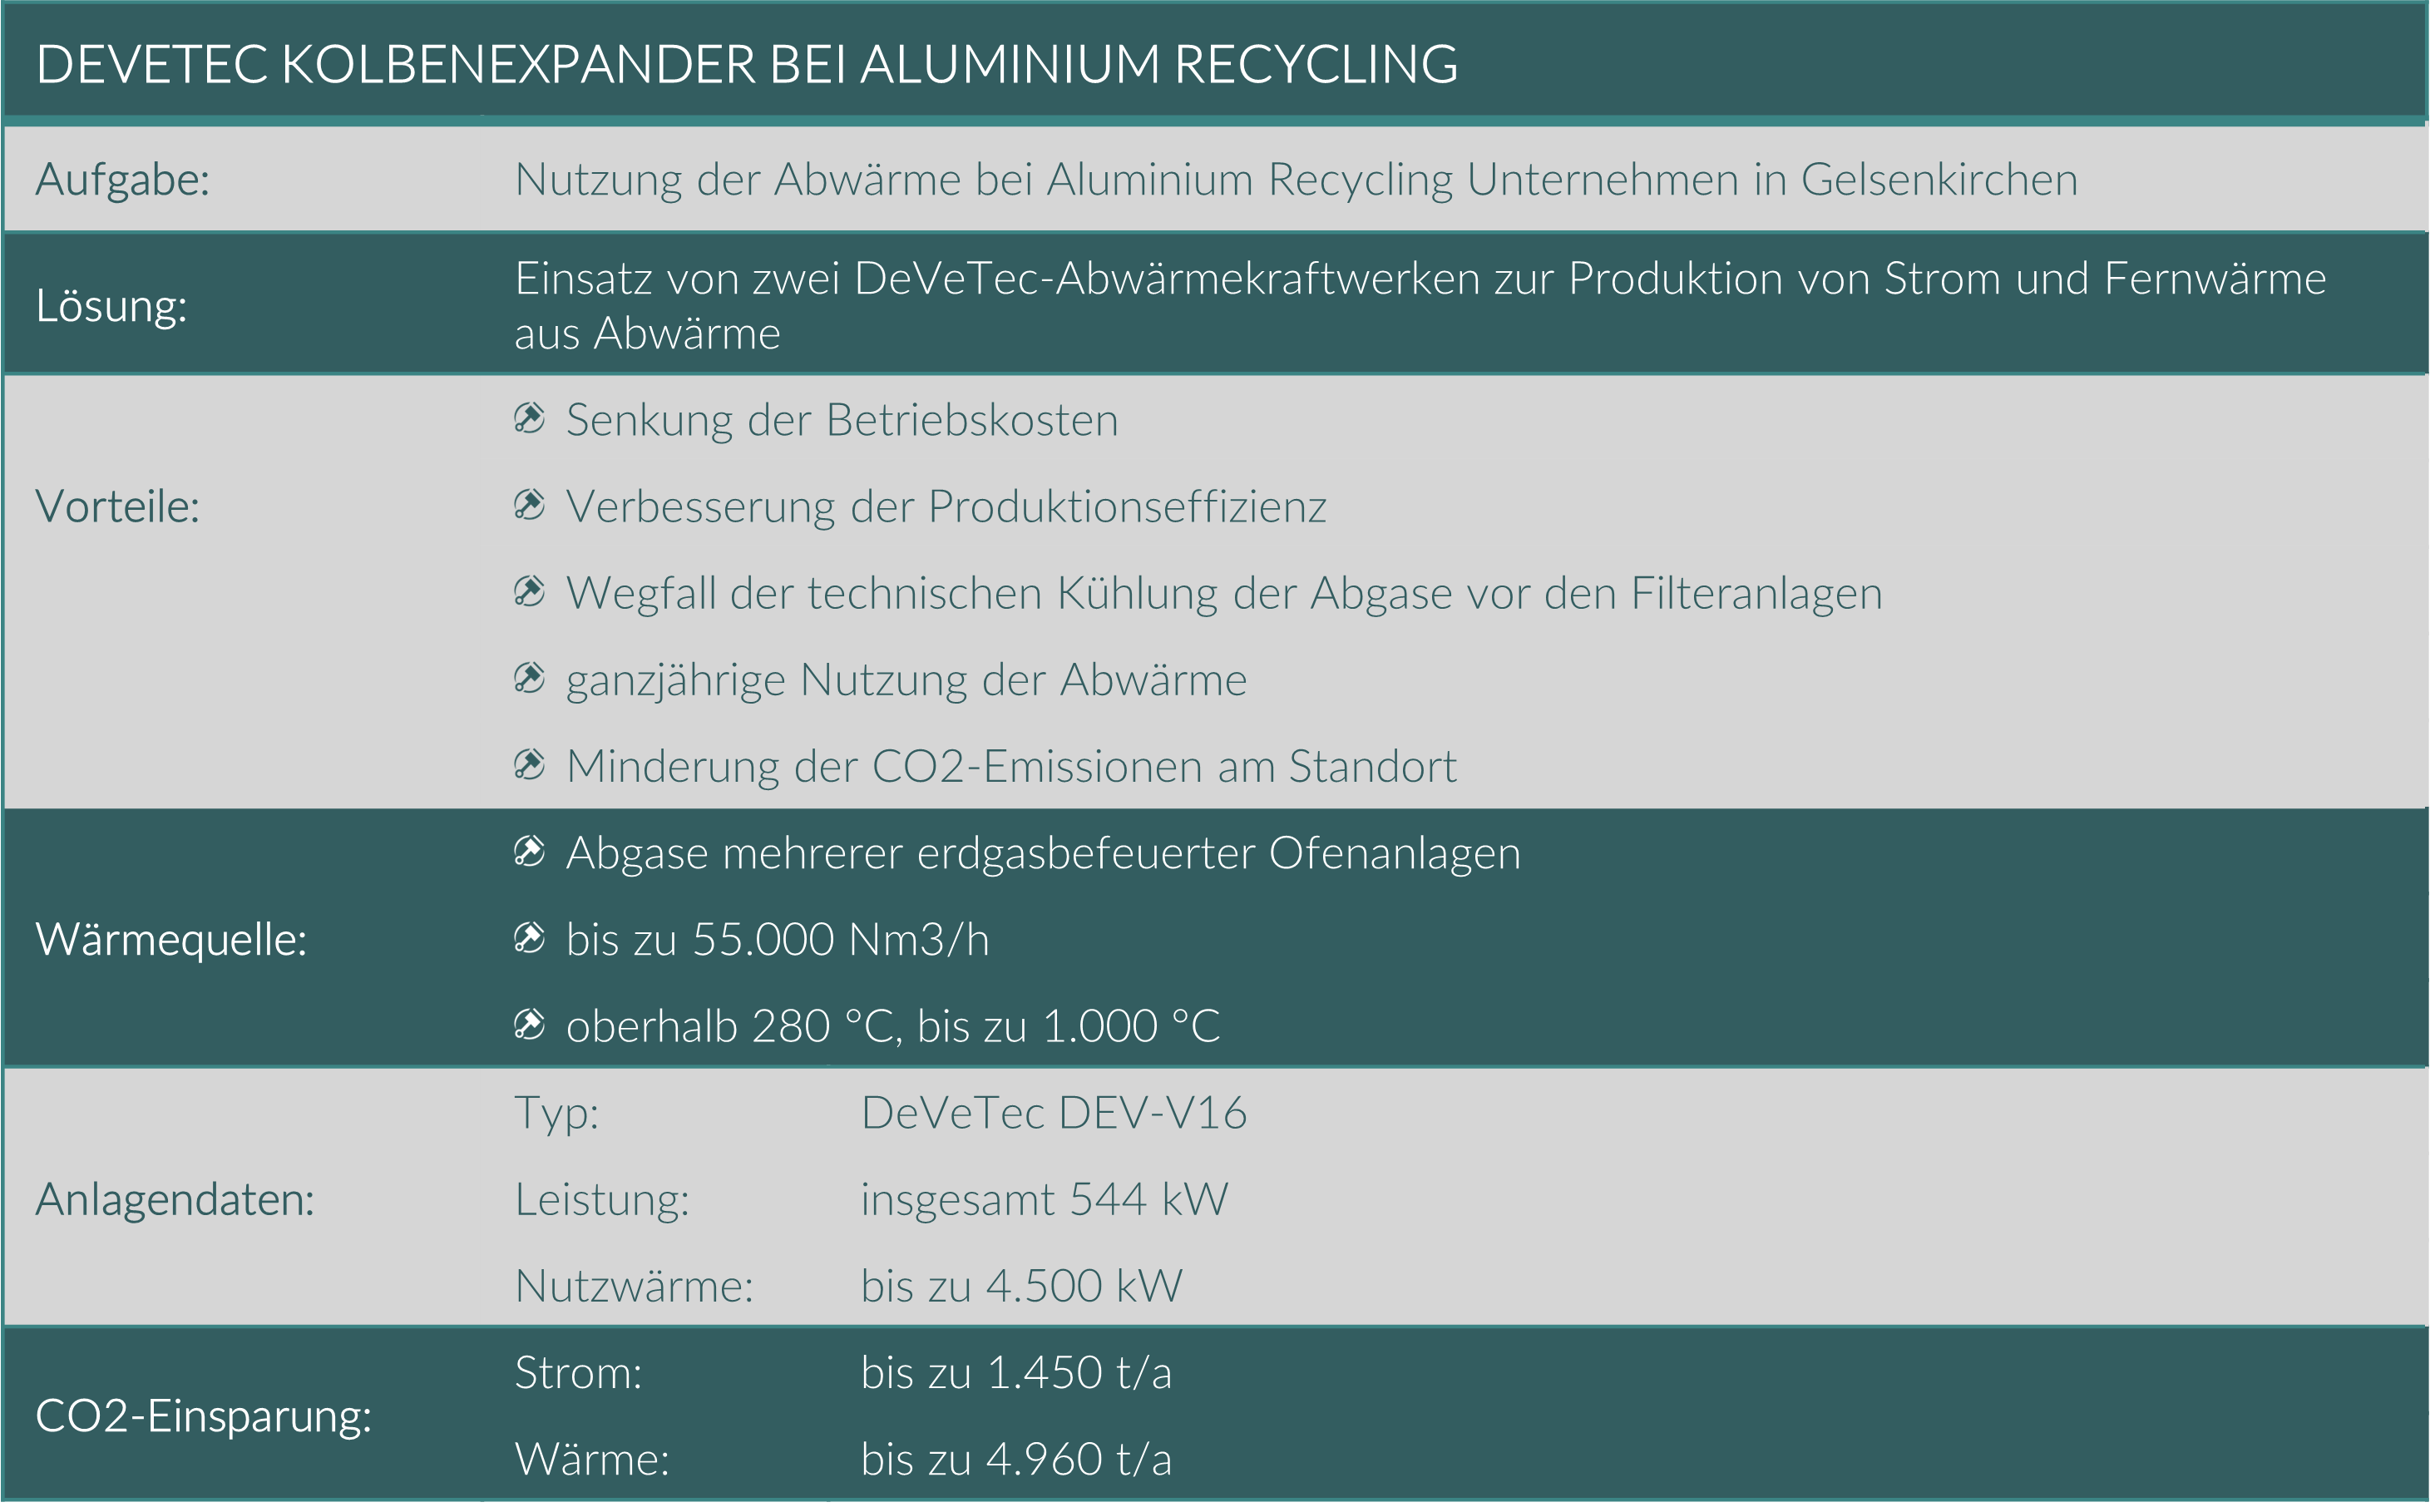 Überblick über das DeVeTec Abwärmekraftwerk zur Prfoduktion von Strom und Fernwärme bei Aluminiumrecycling-Unternehmen in Gelsenkirchen